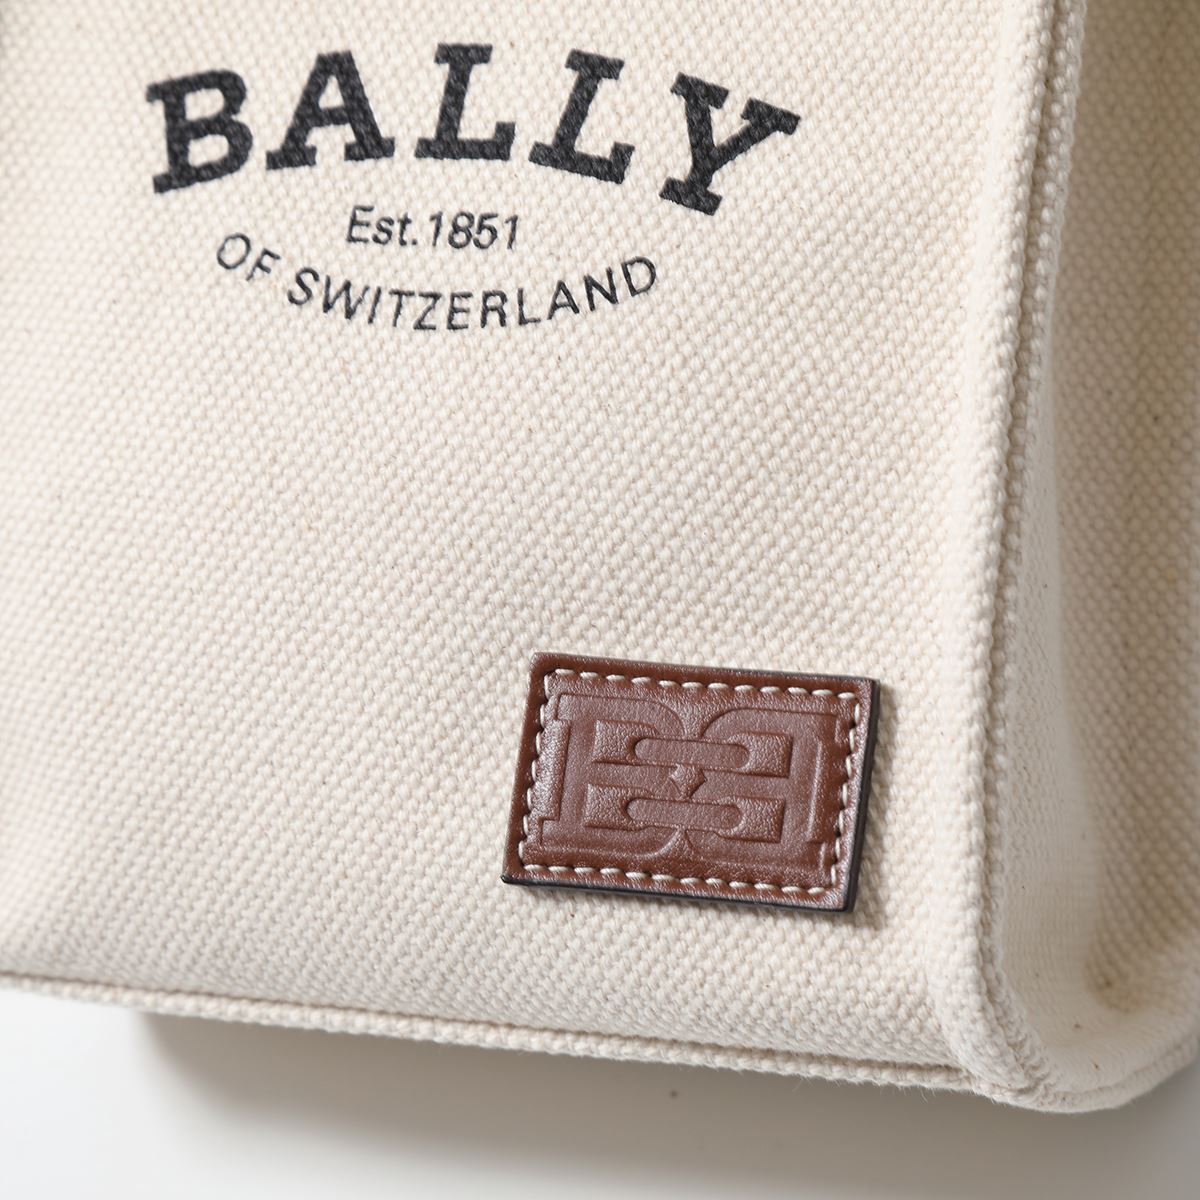 BALLY バリー ショルダーバッグ CRYSTALIAXS.ST クリスタリア レディース ハンドバッグ ロゴ キャンバス×レザー 鞄  NATURAL/CUERO+OVIBR | インポートセレクト musee